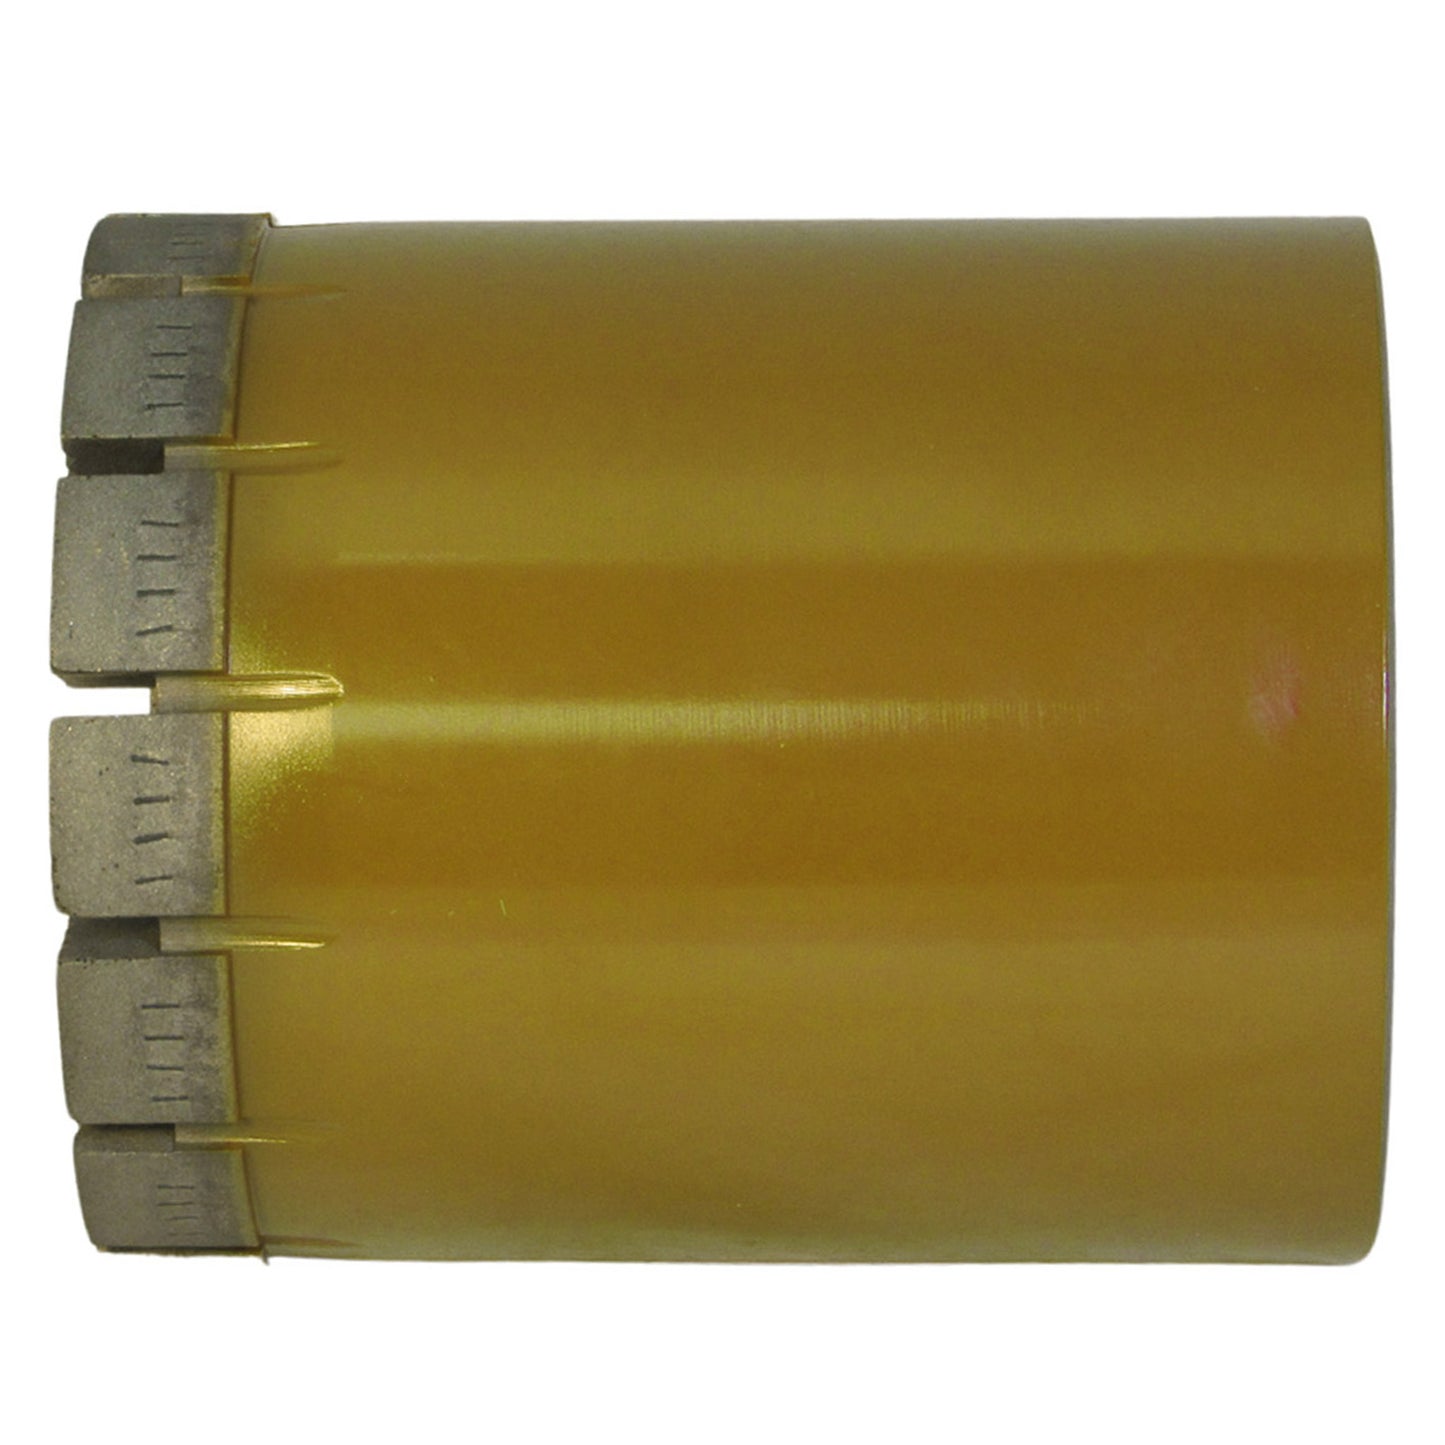 Kestrel 10 - PWL Core Drill Bit - Standard